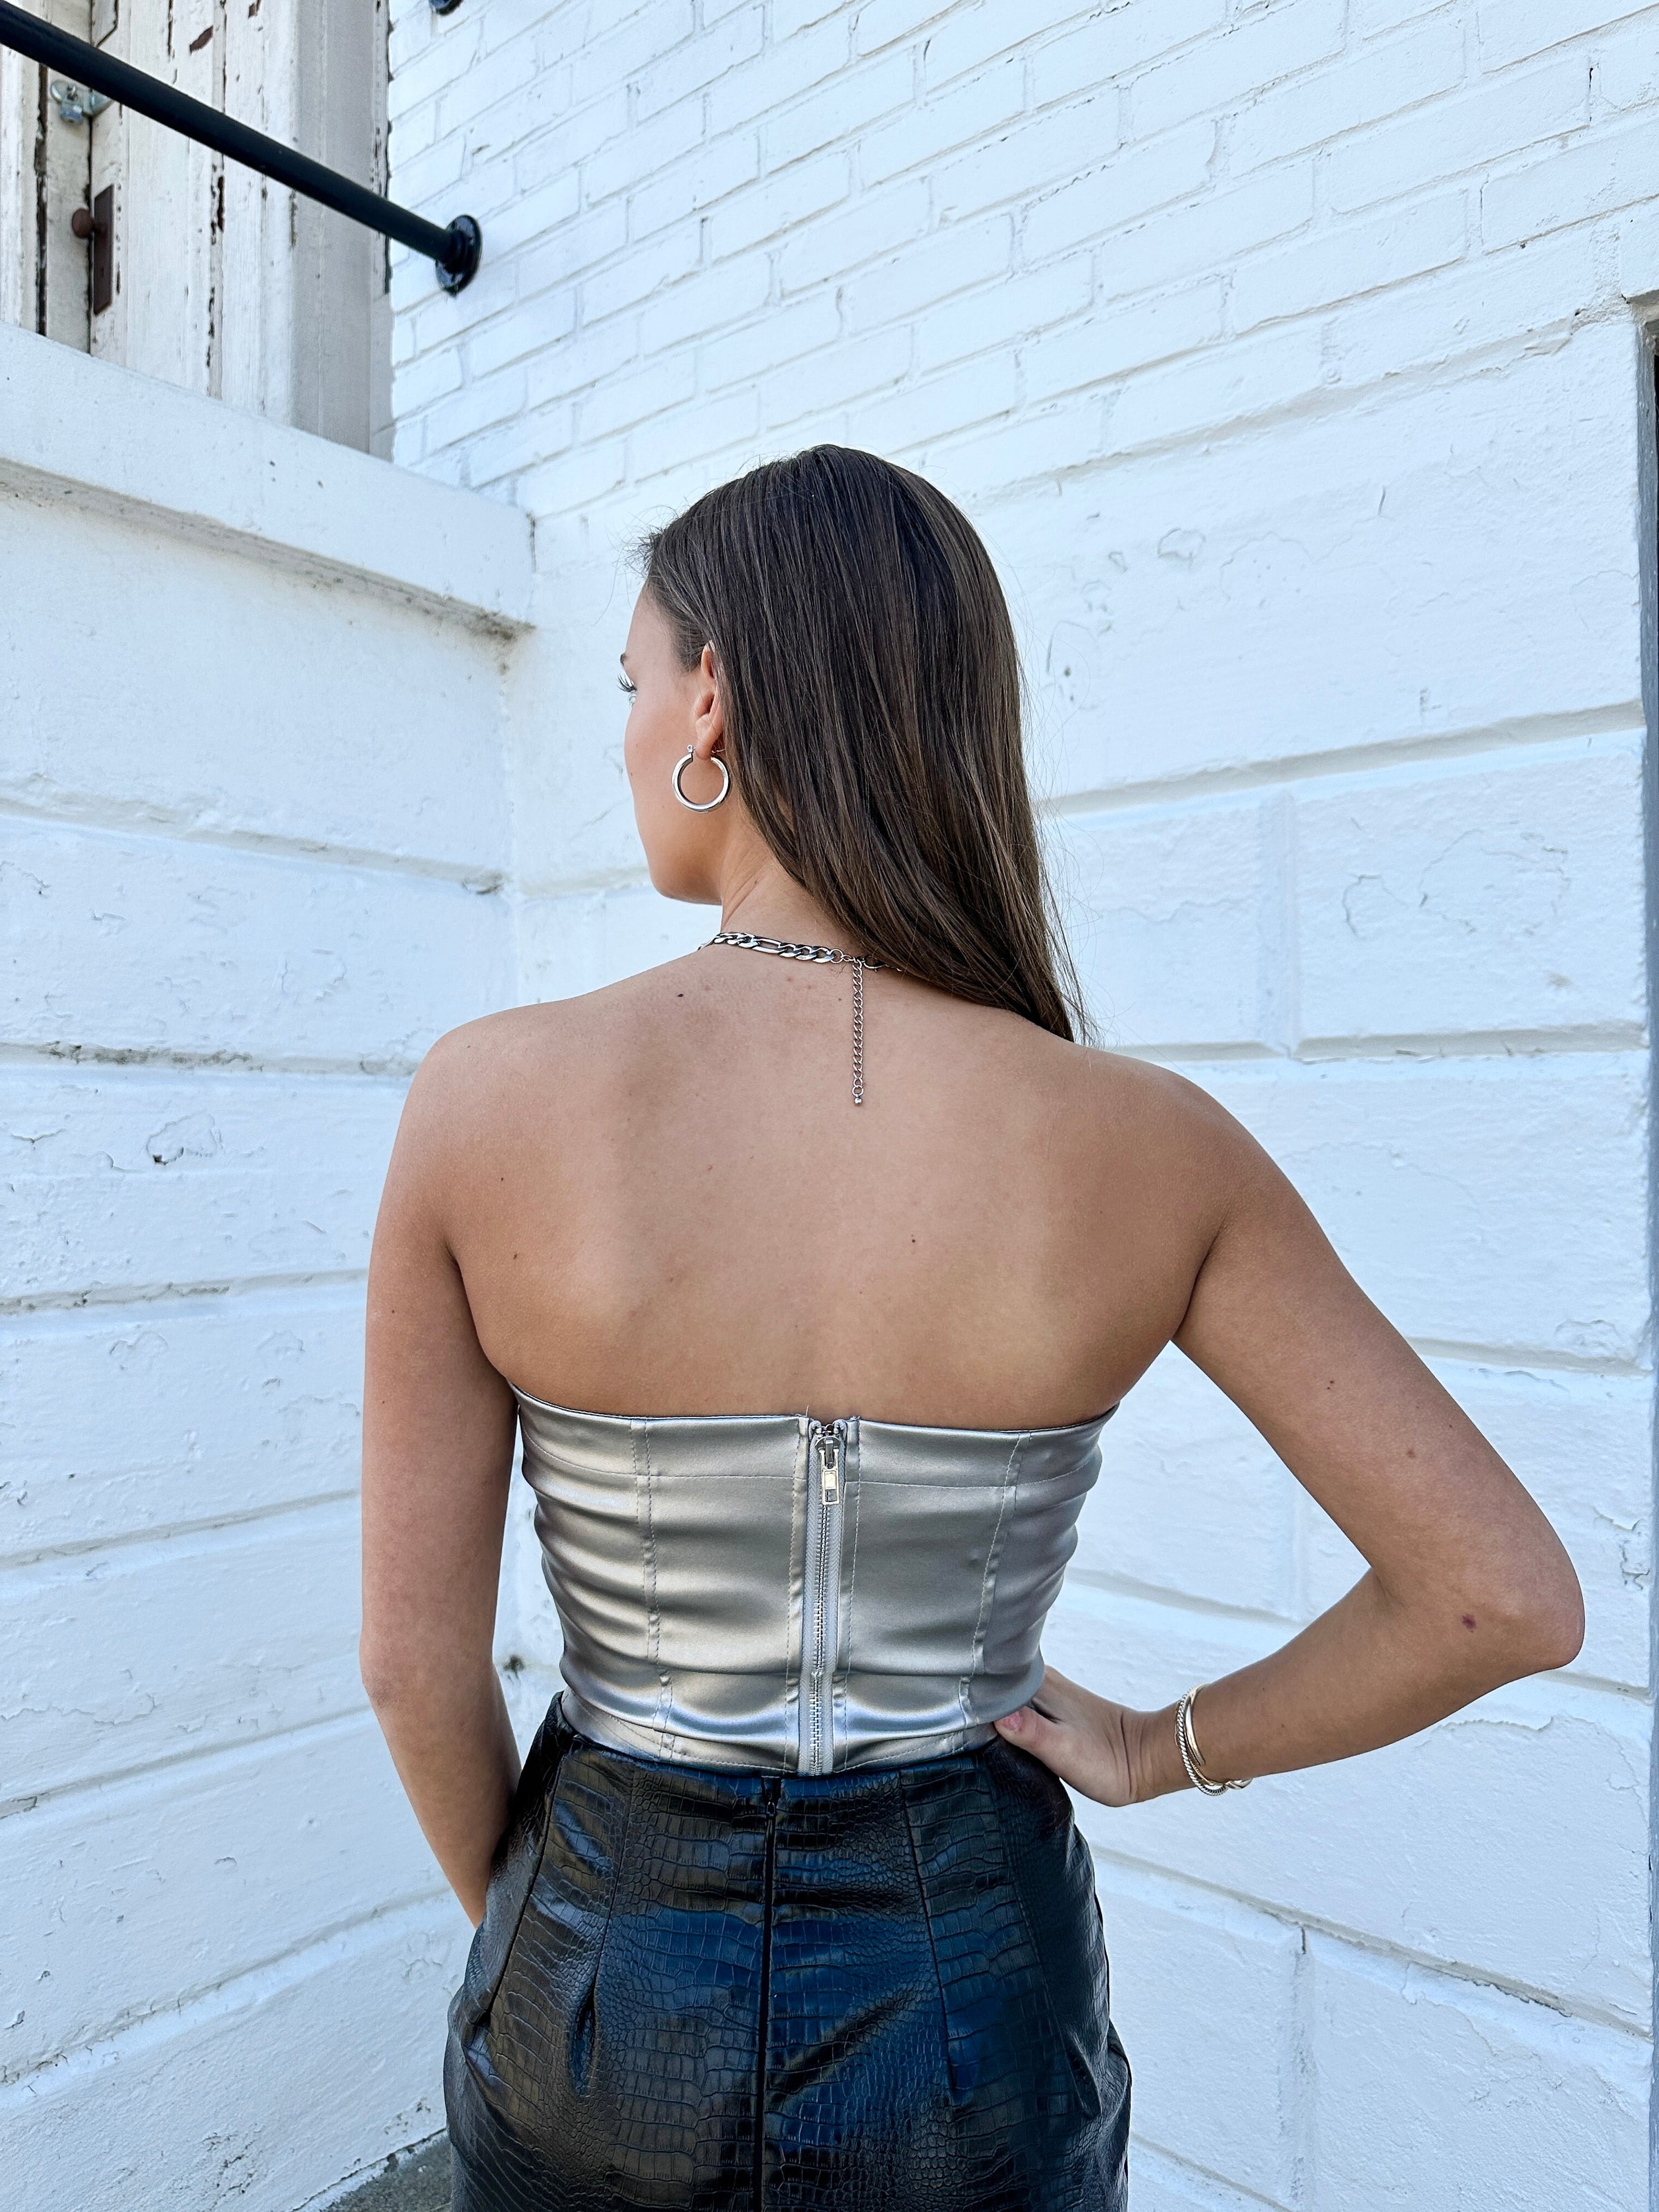 Trending Zara denim corset! Never worn, comes with - Depop